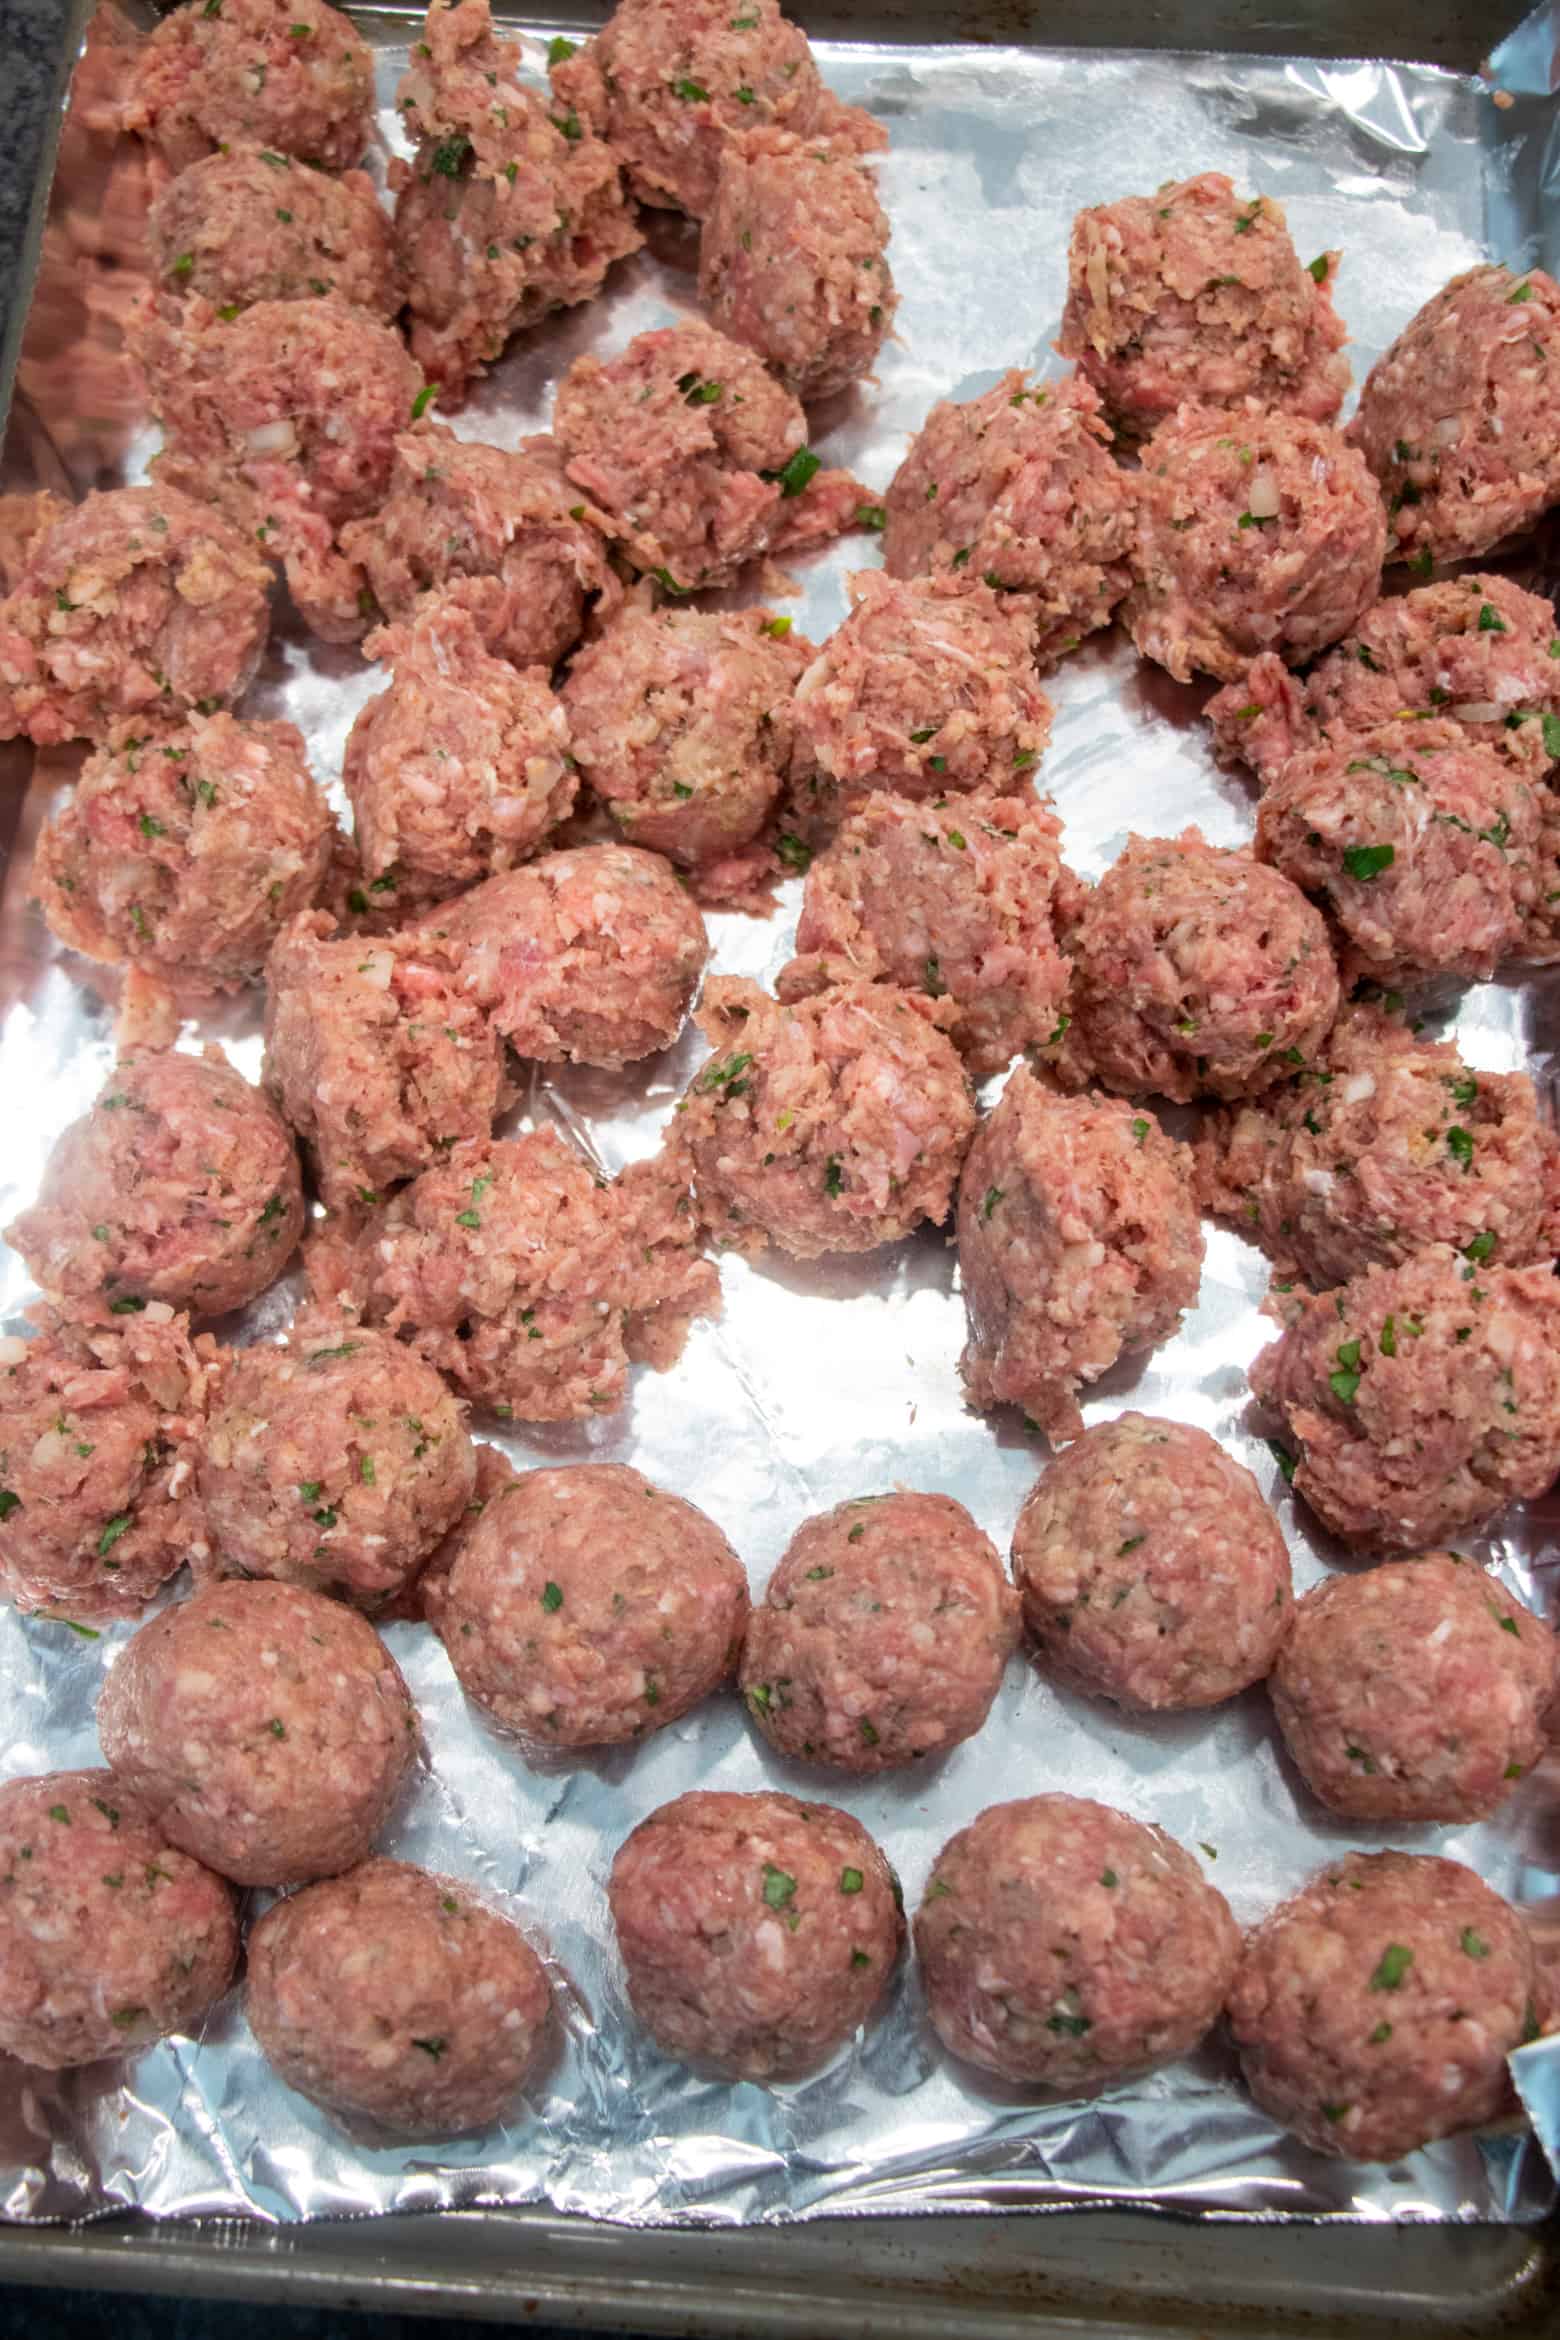 meatballs mixture pre-scooped